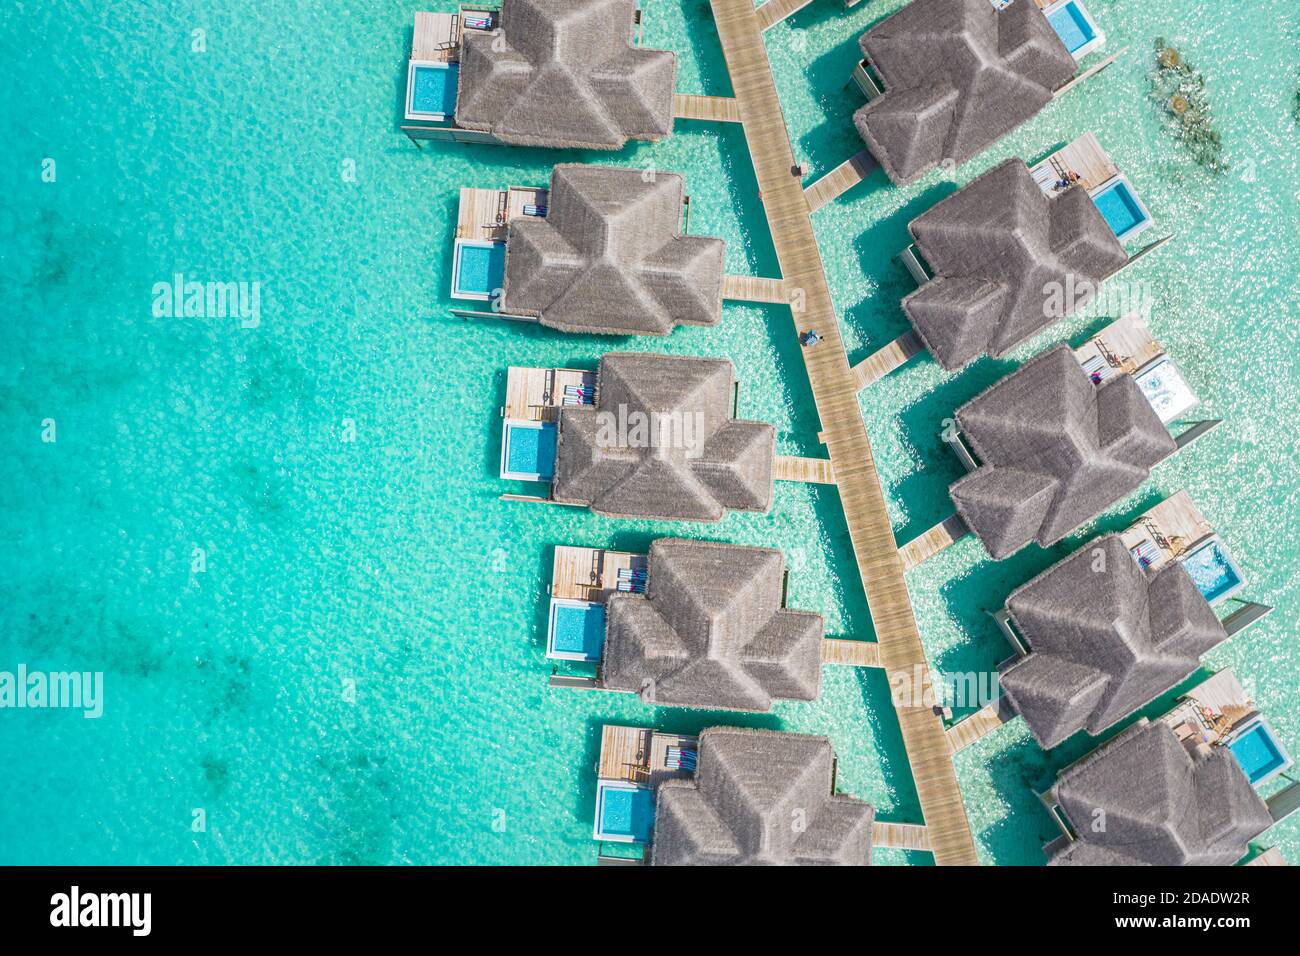 Atolle und Inseln auf den Malediven. Tropische Insel auf den Malediven mit luxuriösen Wasservillen, Bungalows über dem herrlichen blauen Meer. Sommerurlaub, Luftaufnahme Stockfoto